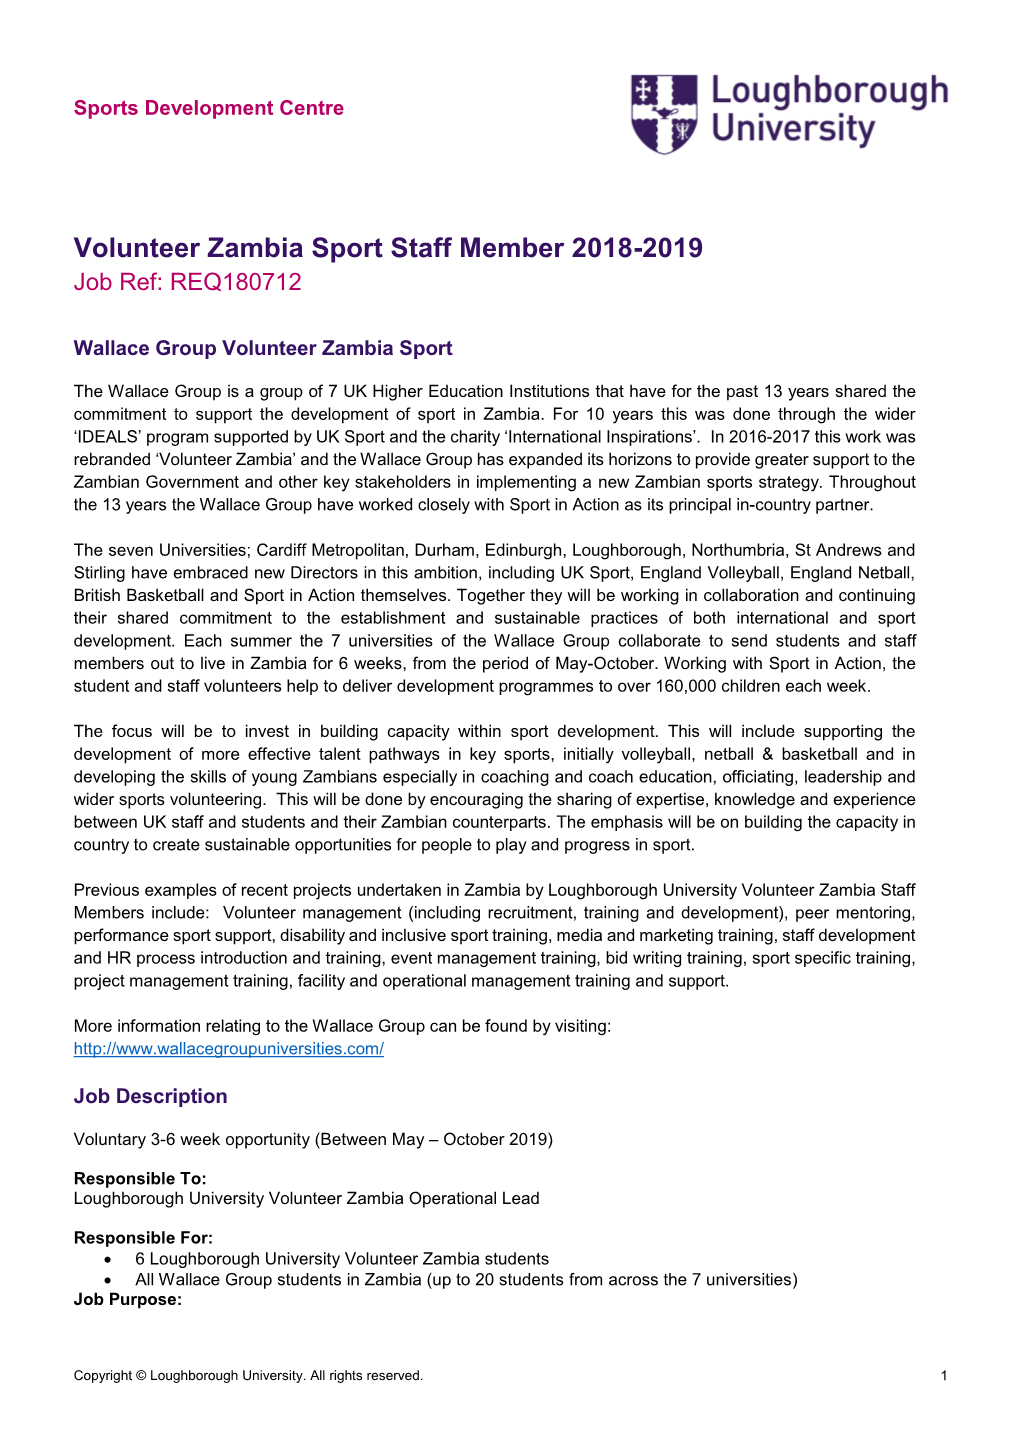 Volunteer Zambia Sport Staff Member 2018-2019 Job Ref: REQ180712